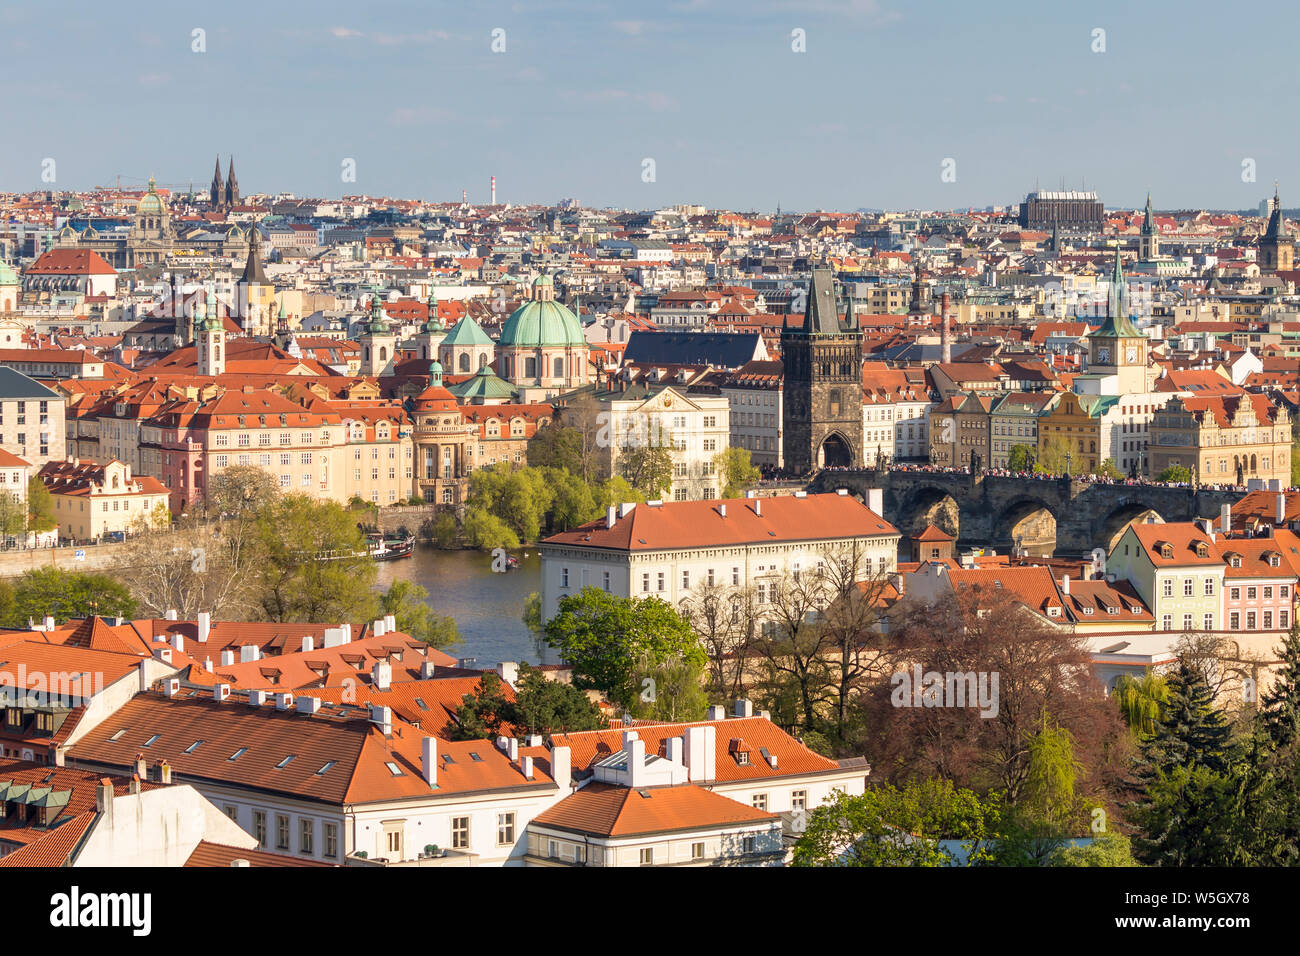 Portrait du Château de Prague sur la petite ville, le Pont Charles et la vieille ville, site du patrimoine mondial de l'UNESCO, Prague, la Bohême, République Tchèque Banque D'Images